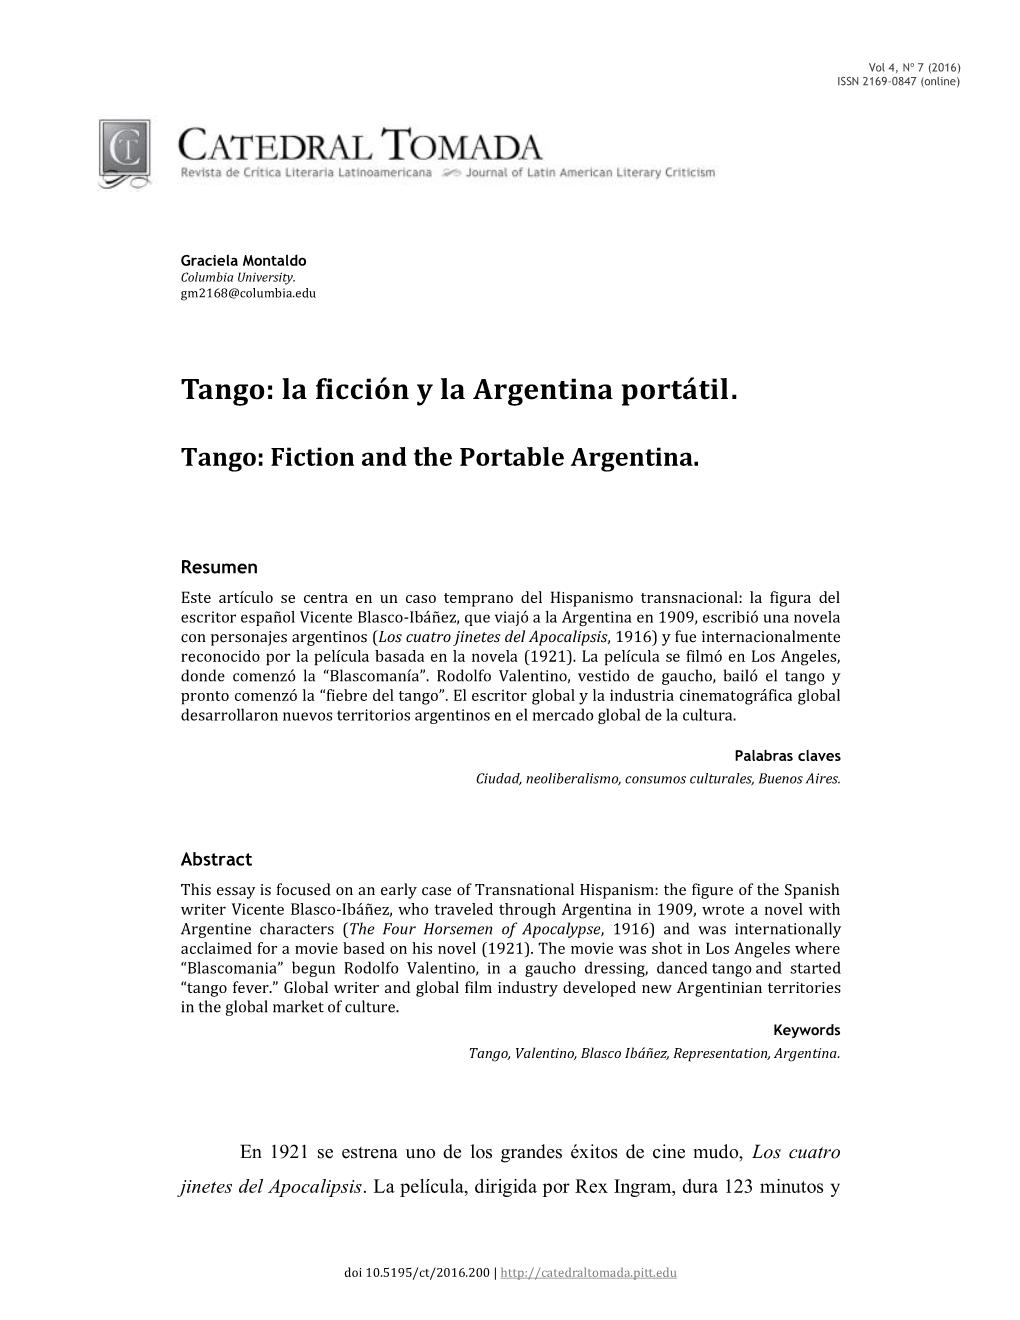 Tango: La Ficción Y La Argentina Portátil